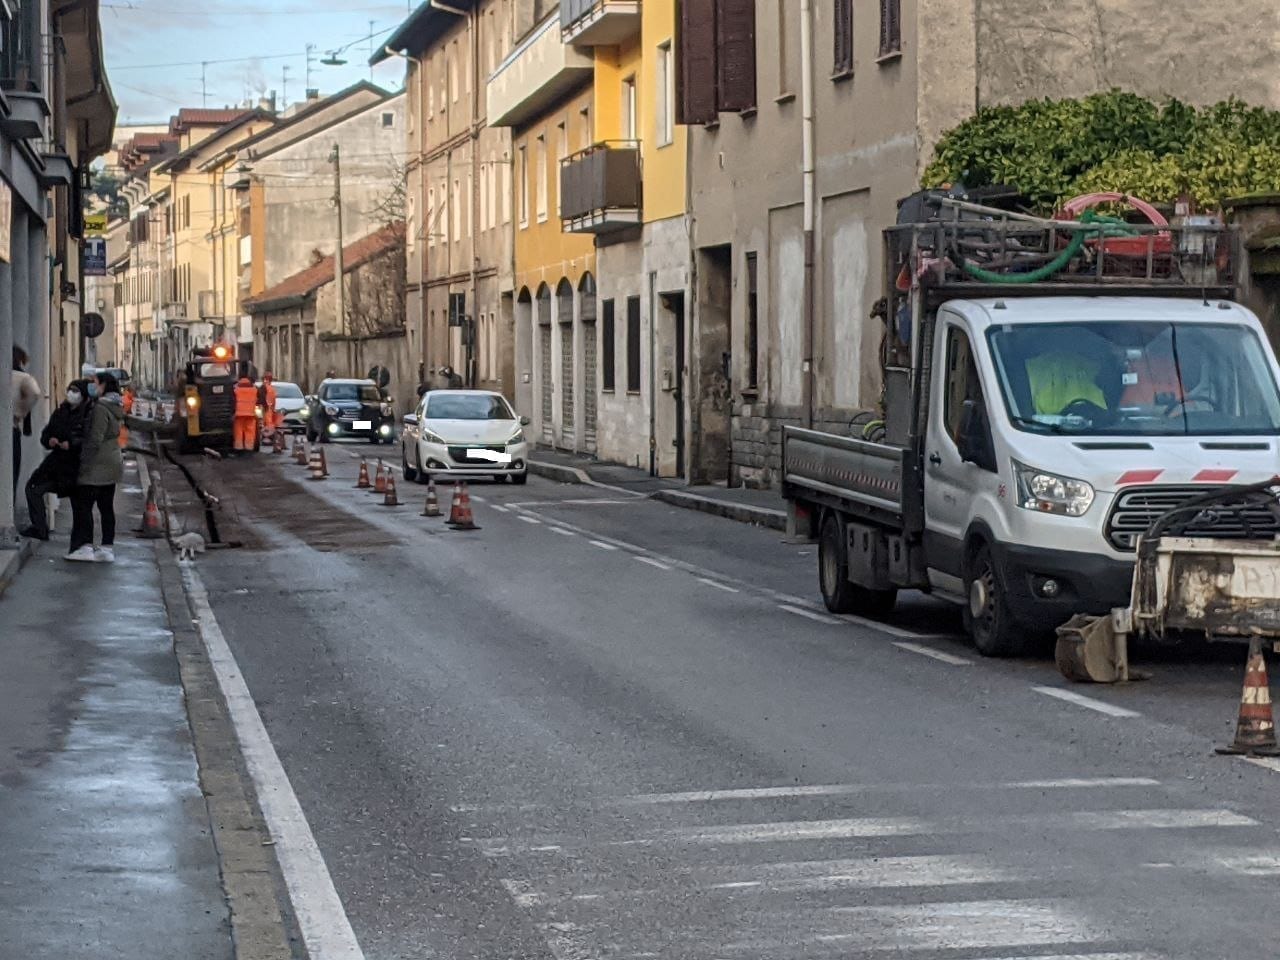 Lavori stradali a Saronno per fibra, acqua e gas. Le bacchettate del Comune: partono le diffide